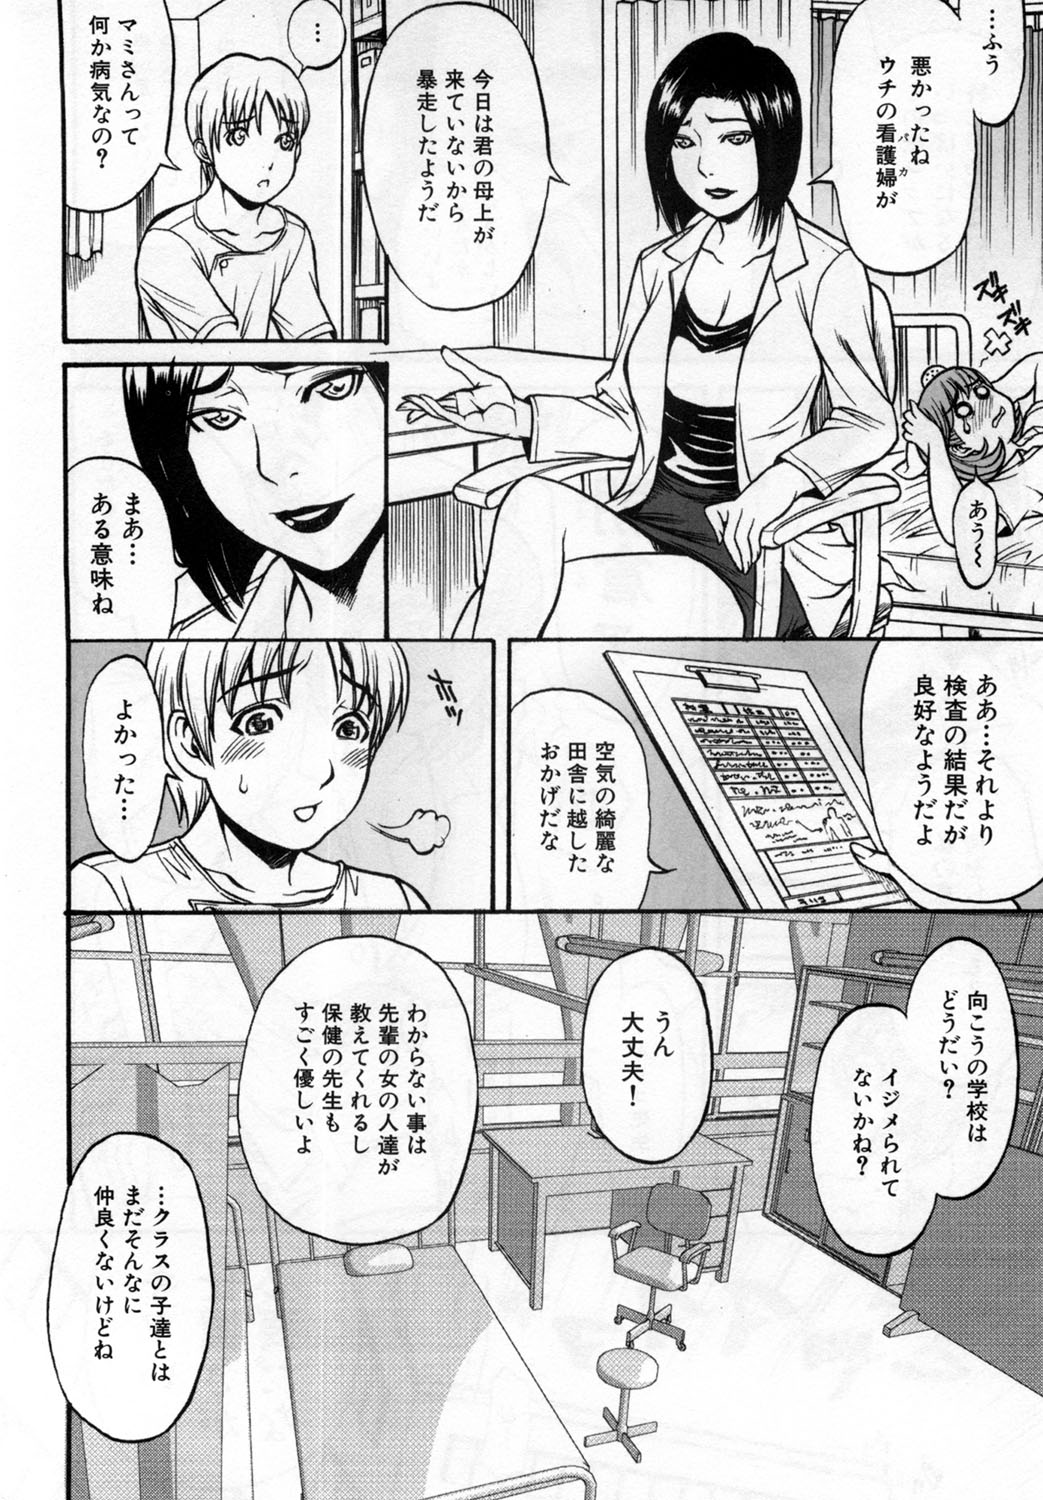 [Kuniaki Kitakata] Boku no Mama (My Mom) Chapters 1-4 page 48 full